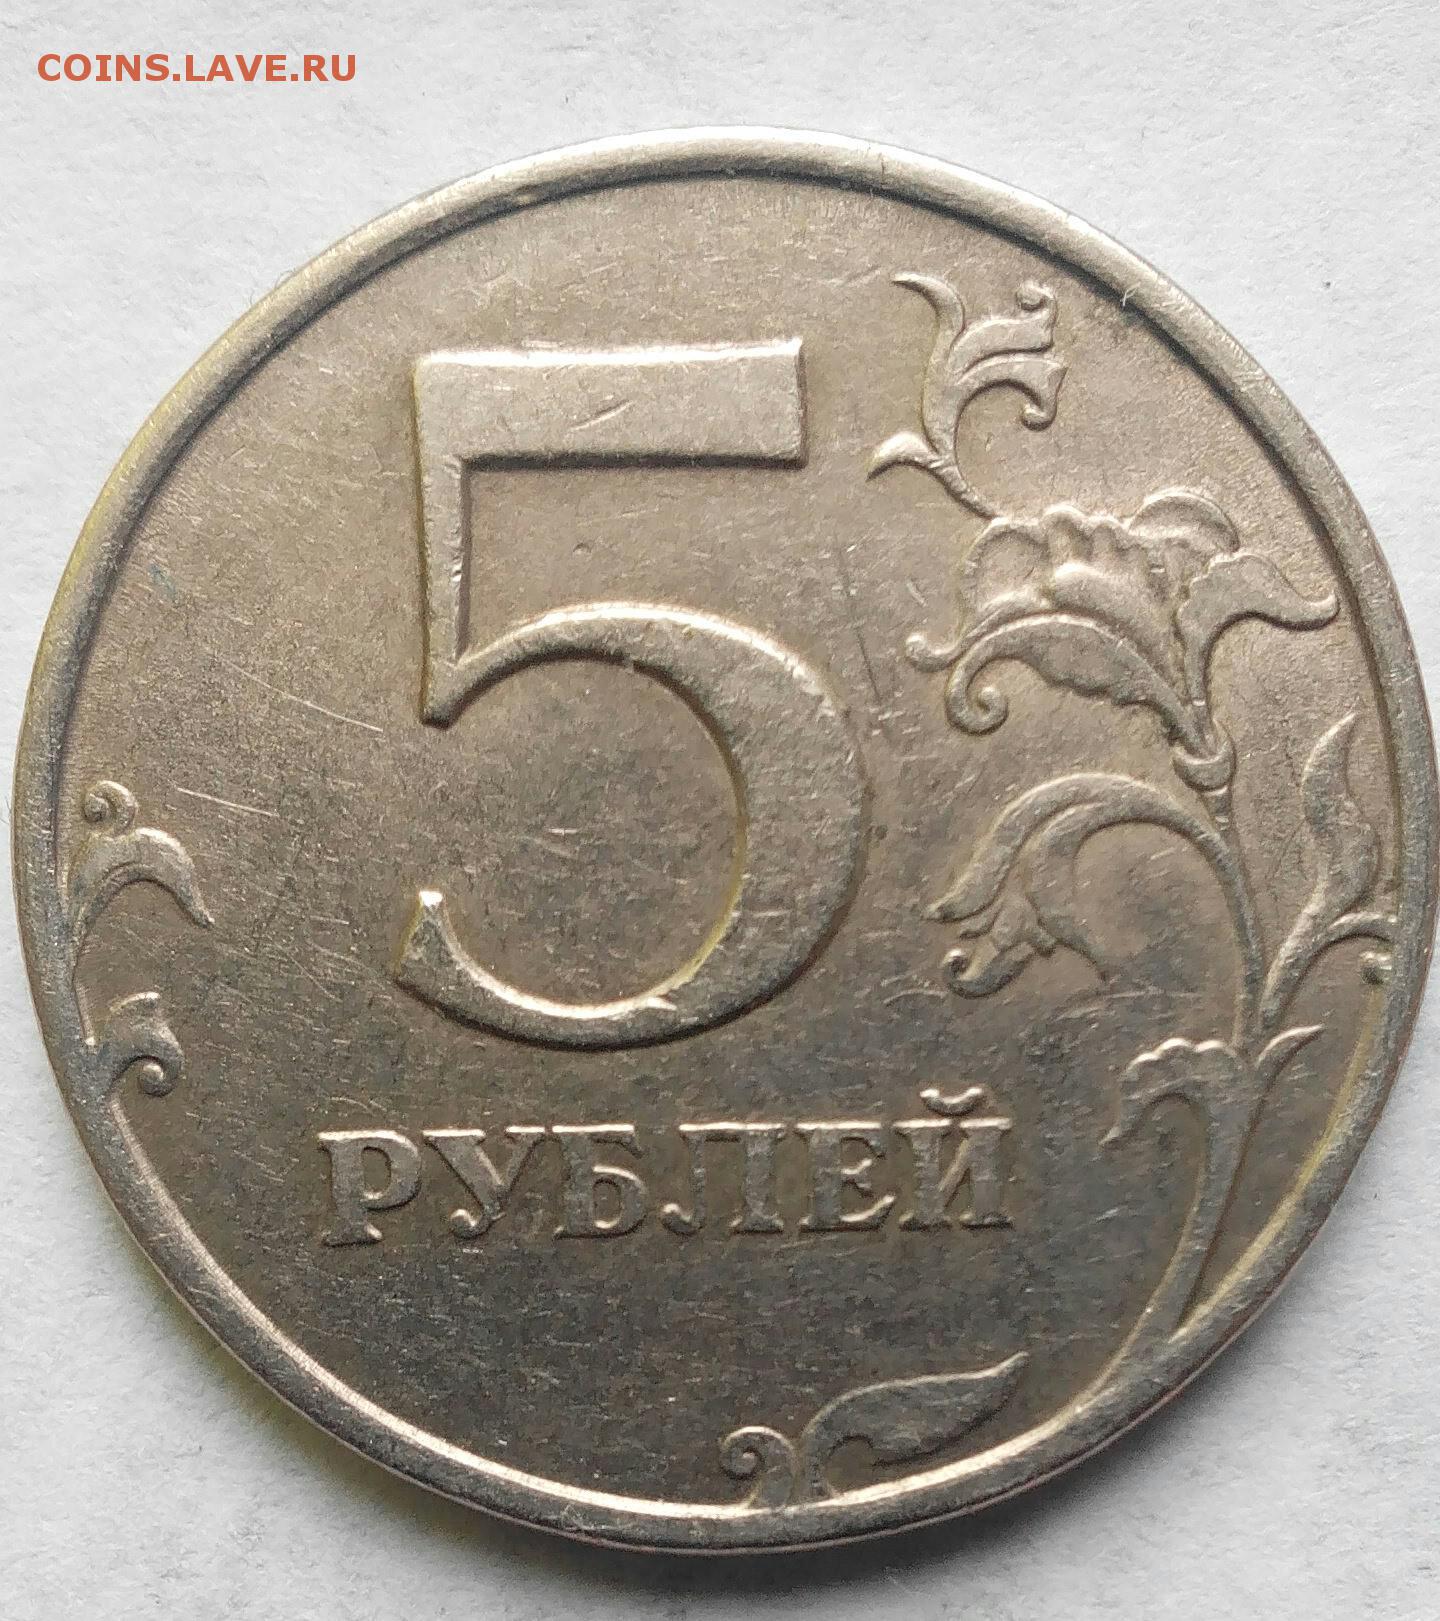 Рубль 5 31. 5 Рублей 1998 СПМД редкая.